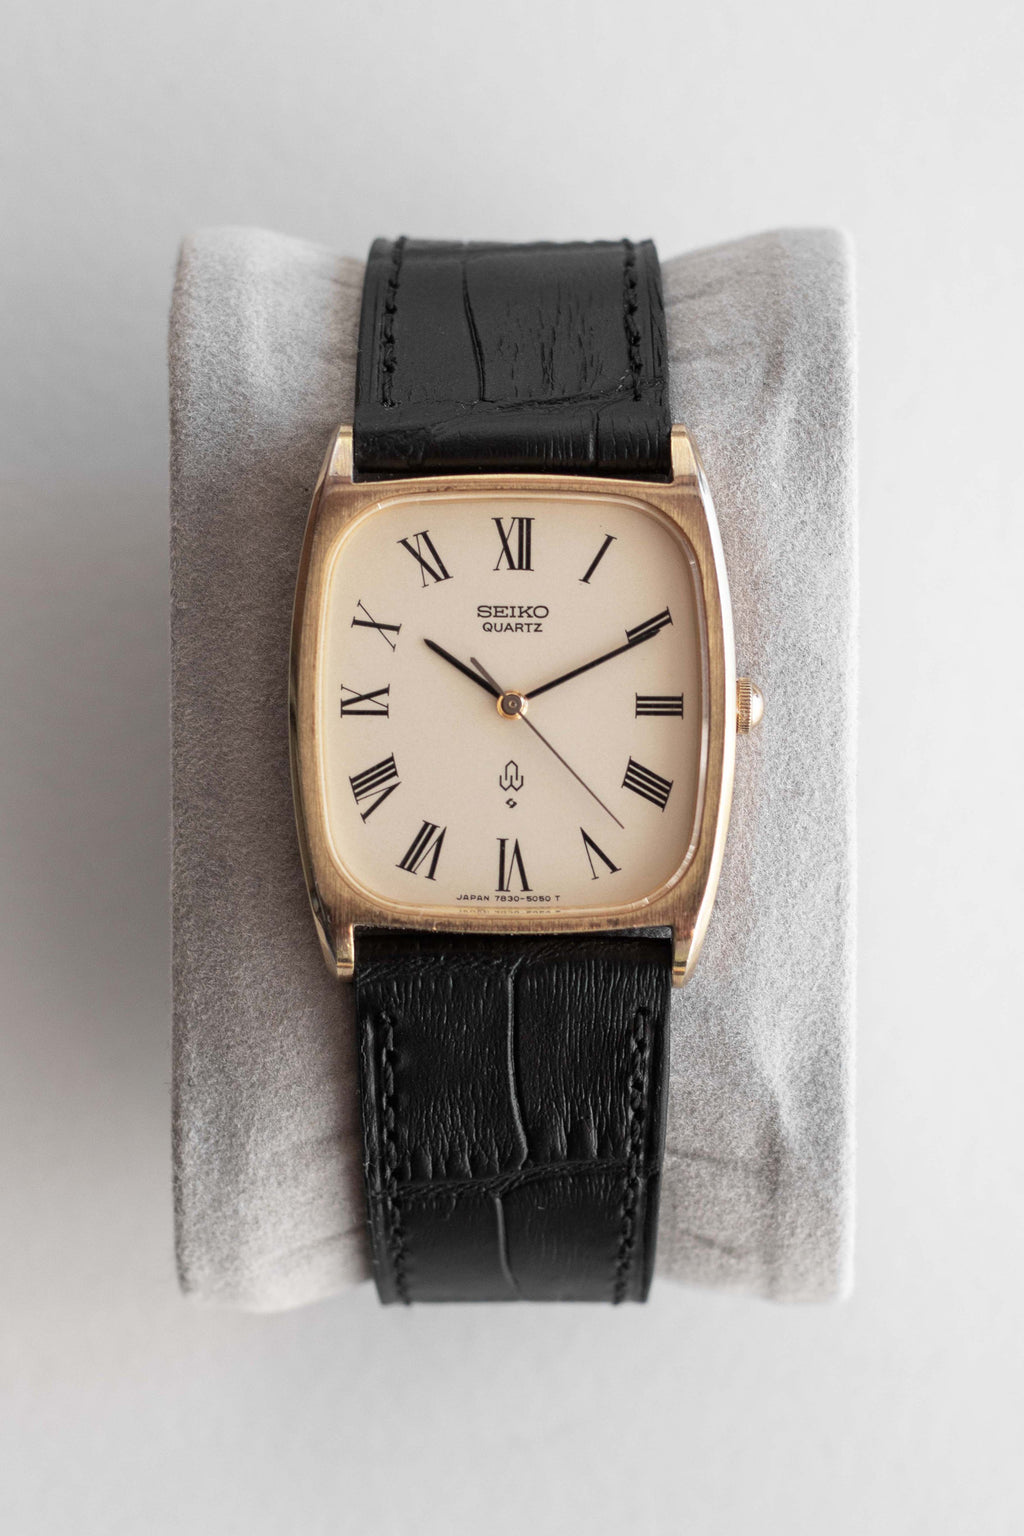 Seiko Quartz Tank Ref. 7830-5040 1978 | Vintage & Pre-Owned Luxury Watches  – Wynn & Thayne